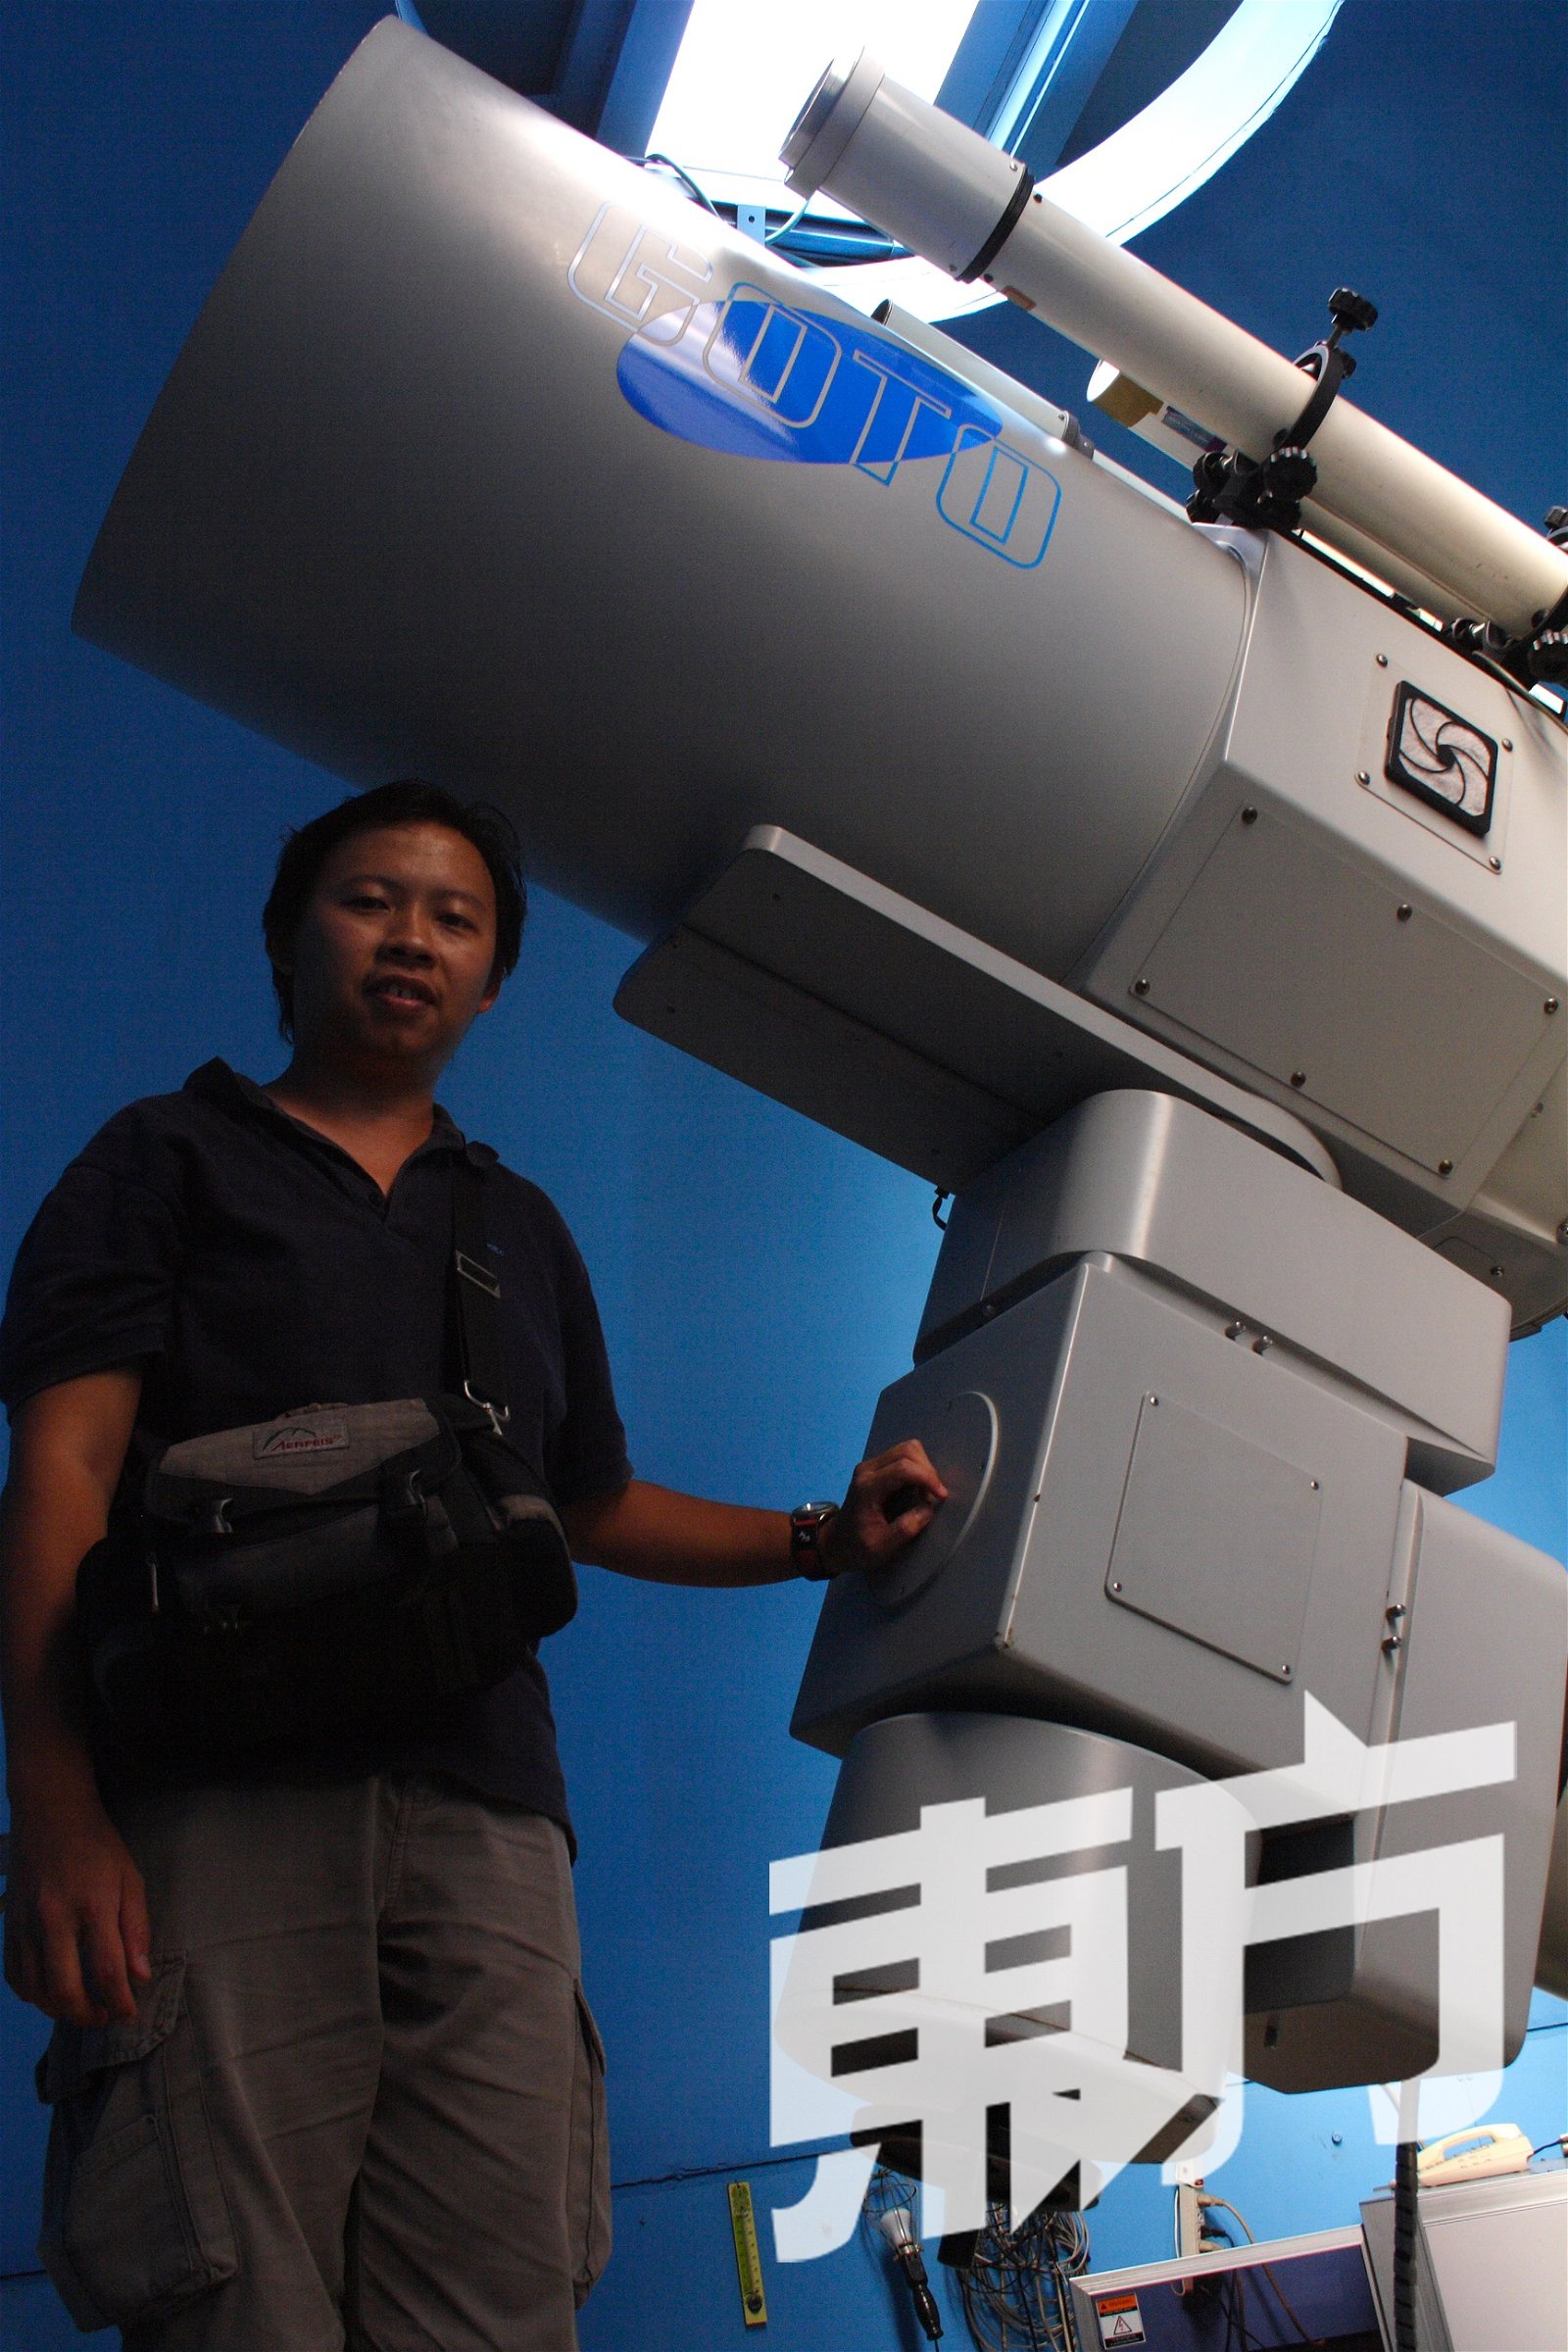 陈伟伦的寻星之旅不曾中断，他指自己的脑海里除了天文，还是天文。图摄于台北市立天文馆。